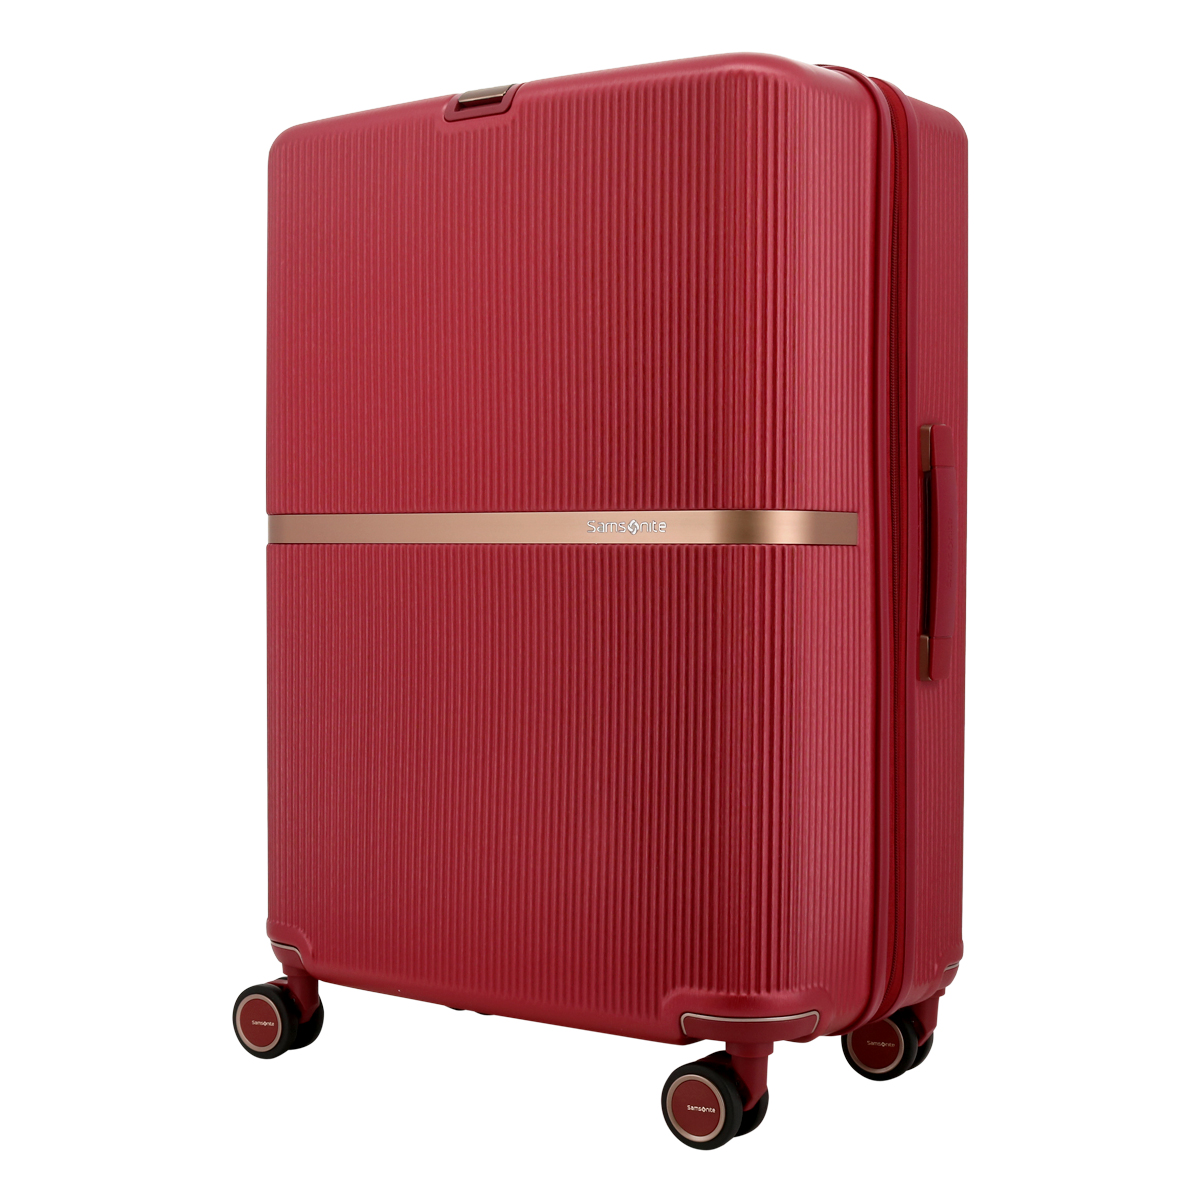 Samsonite 旅行用品 ハードタイプスーツケース（泊数目安：3泊〜5泊用